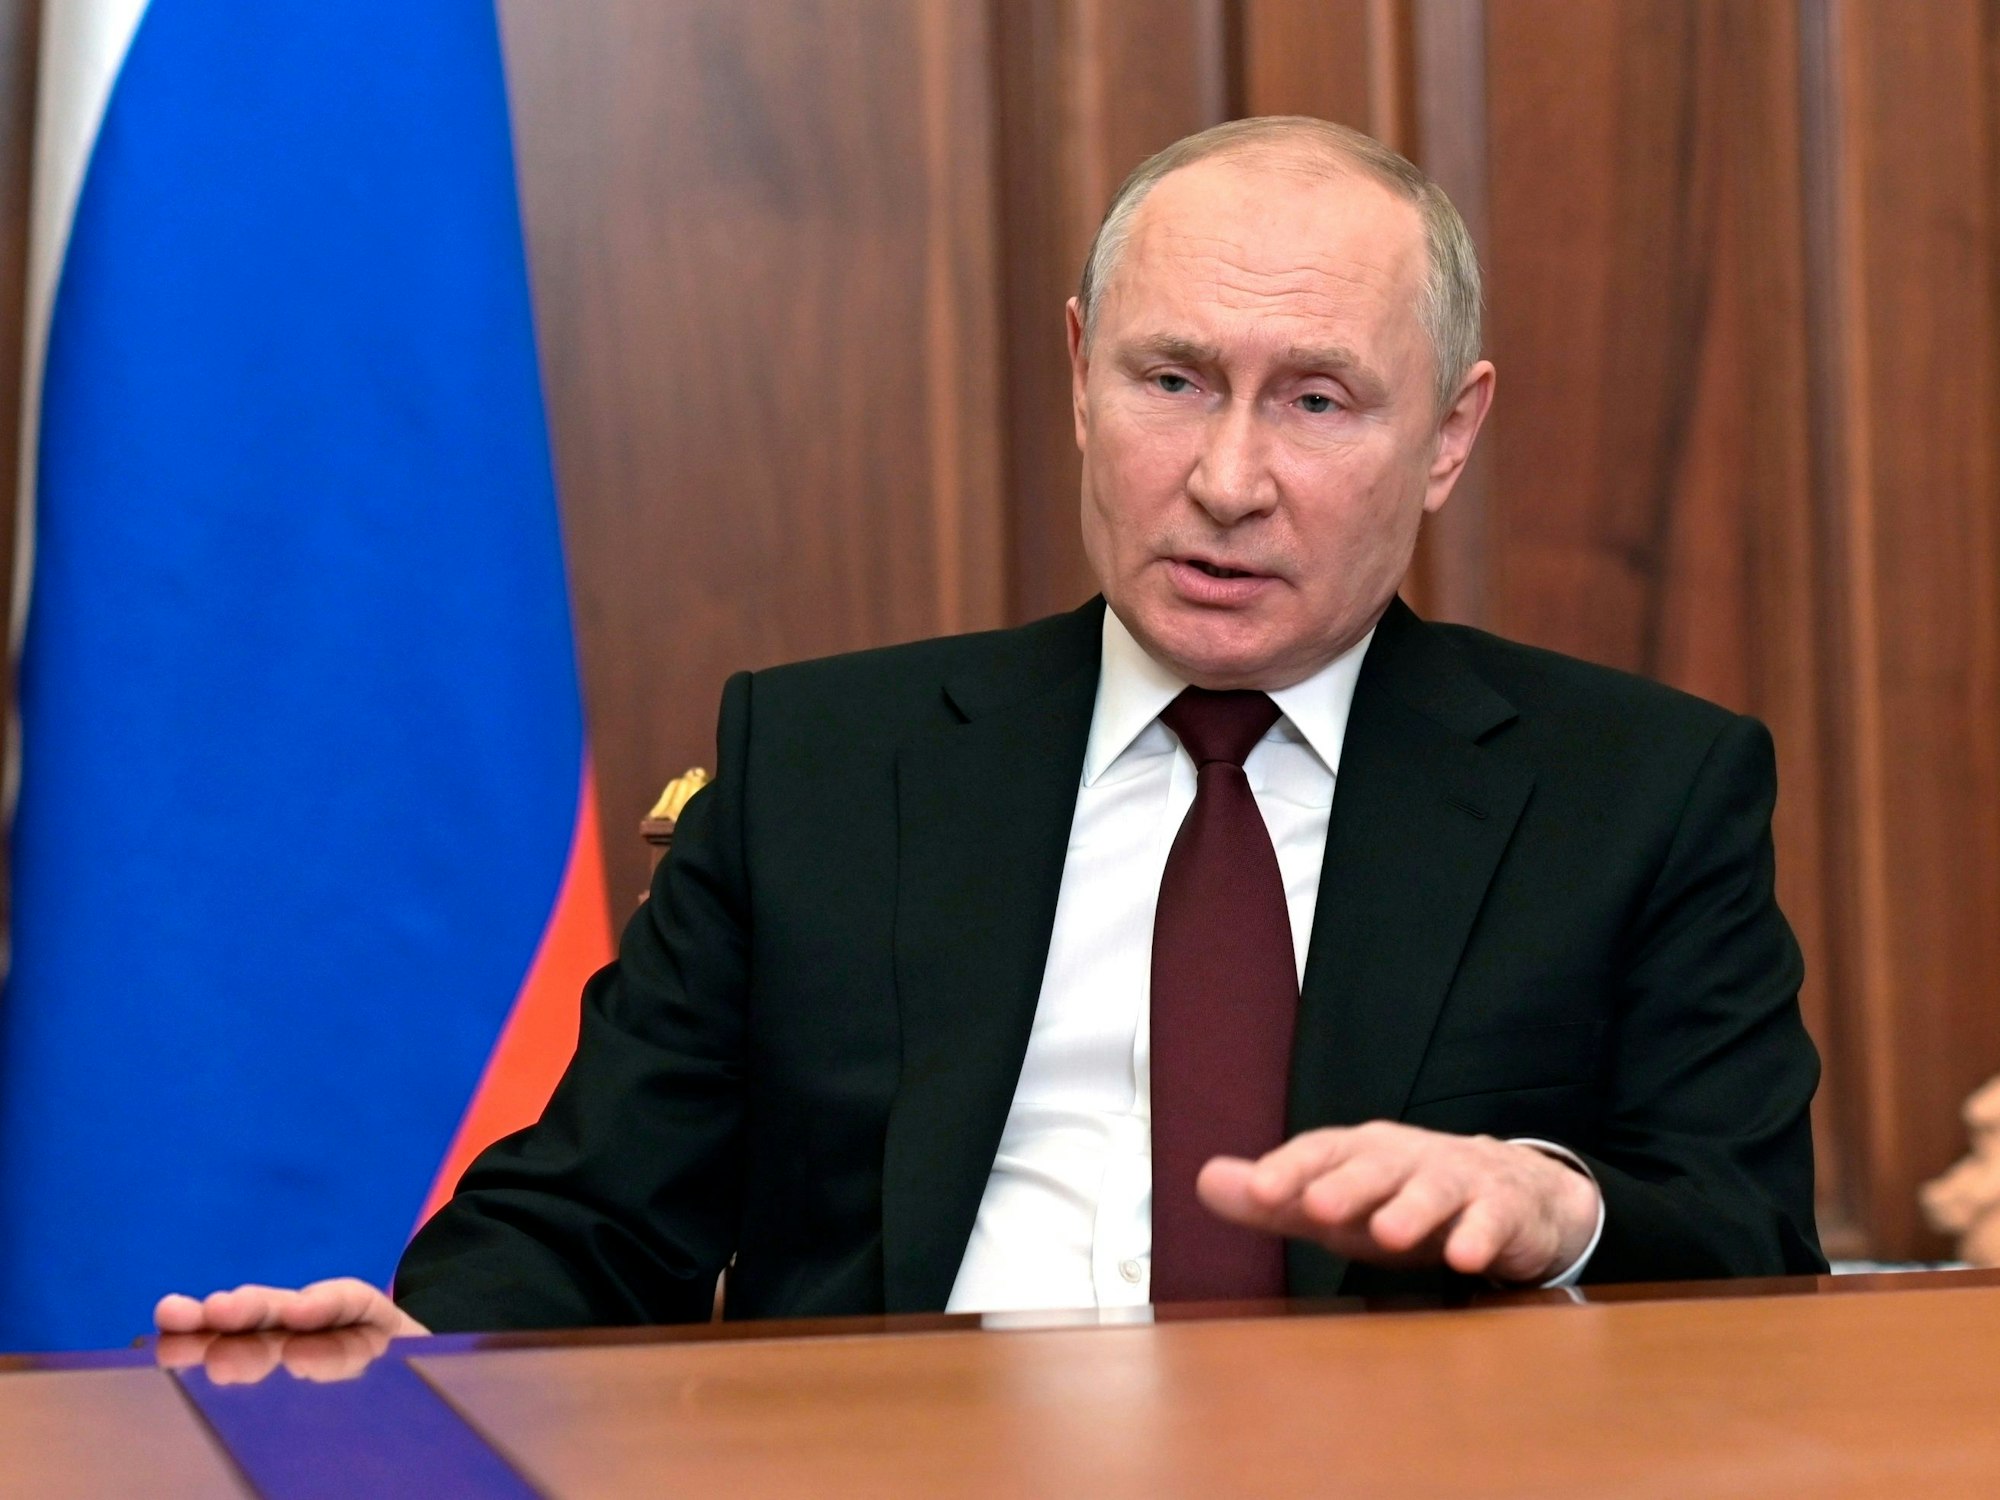 Wladimir Putin, Präsident von Russland, spricht zur Nation im Kreml in Moskau, Russland